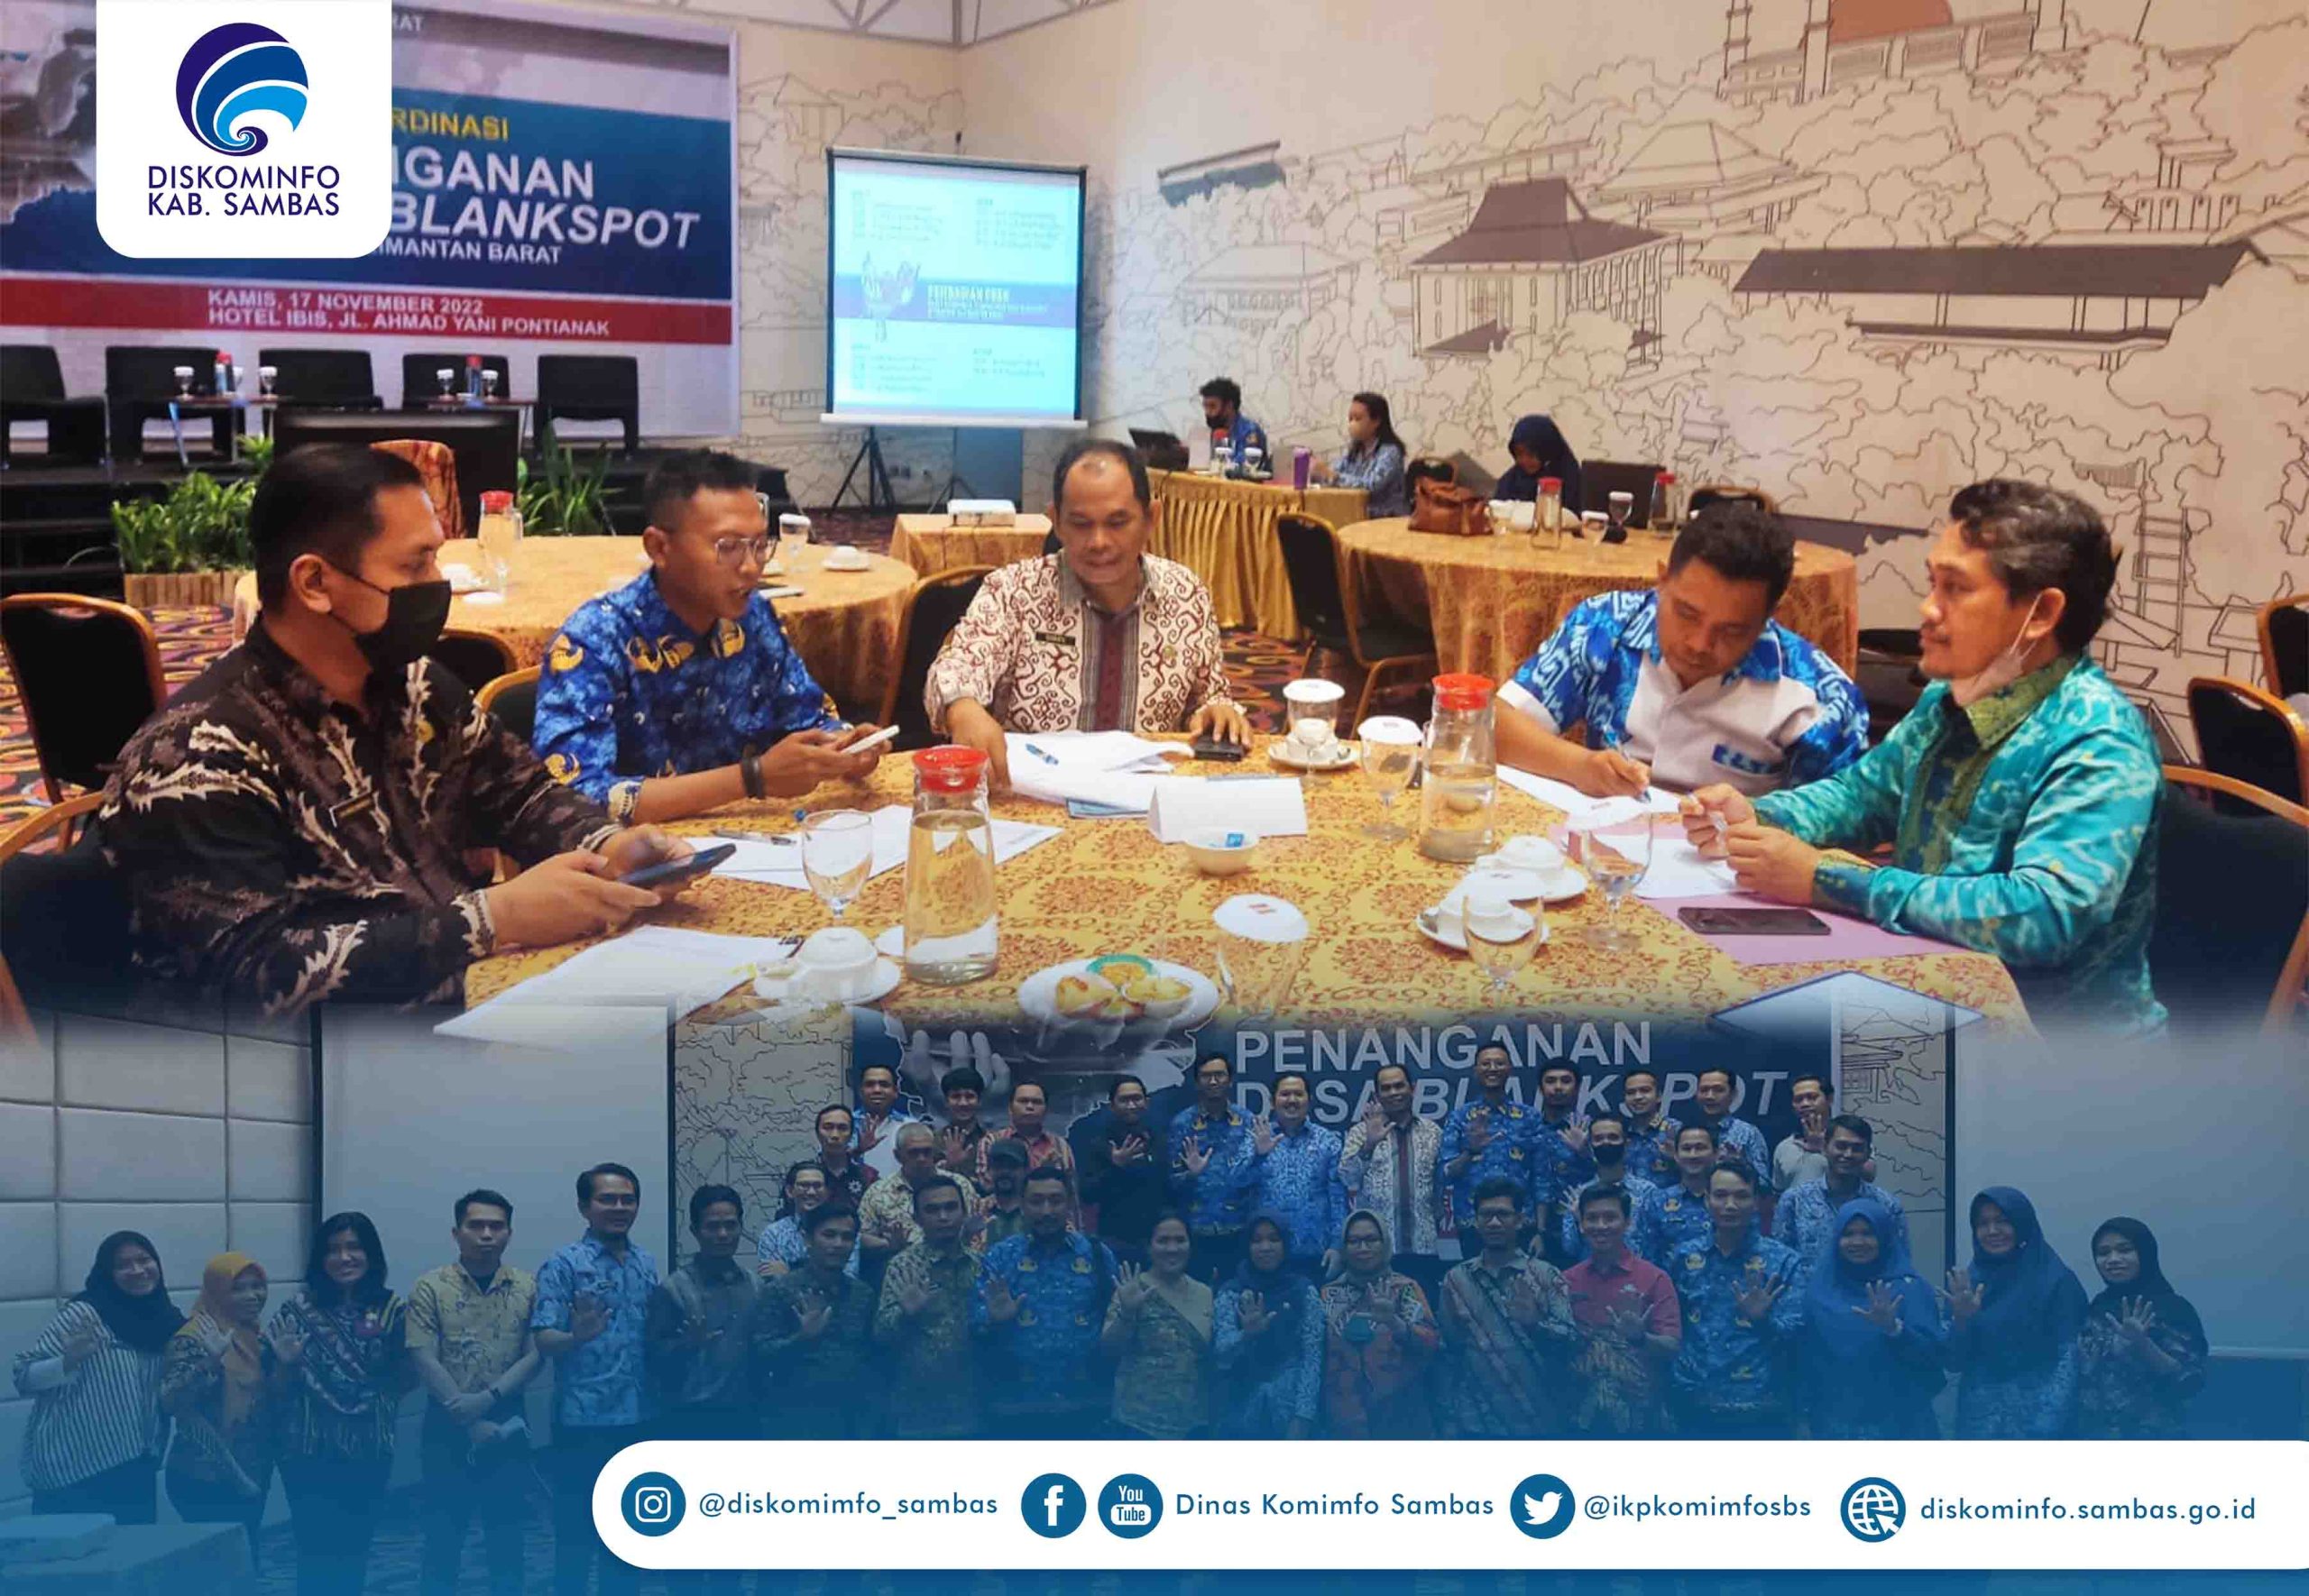 Read more about the article Rapat Koordinasi Penanganan Desa Blankspot Se-Kalimantan Barat